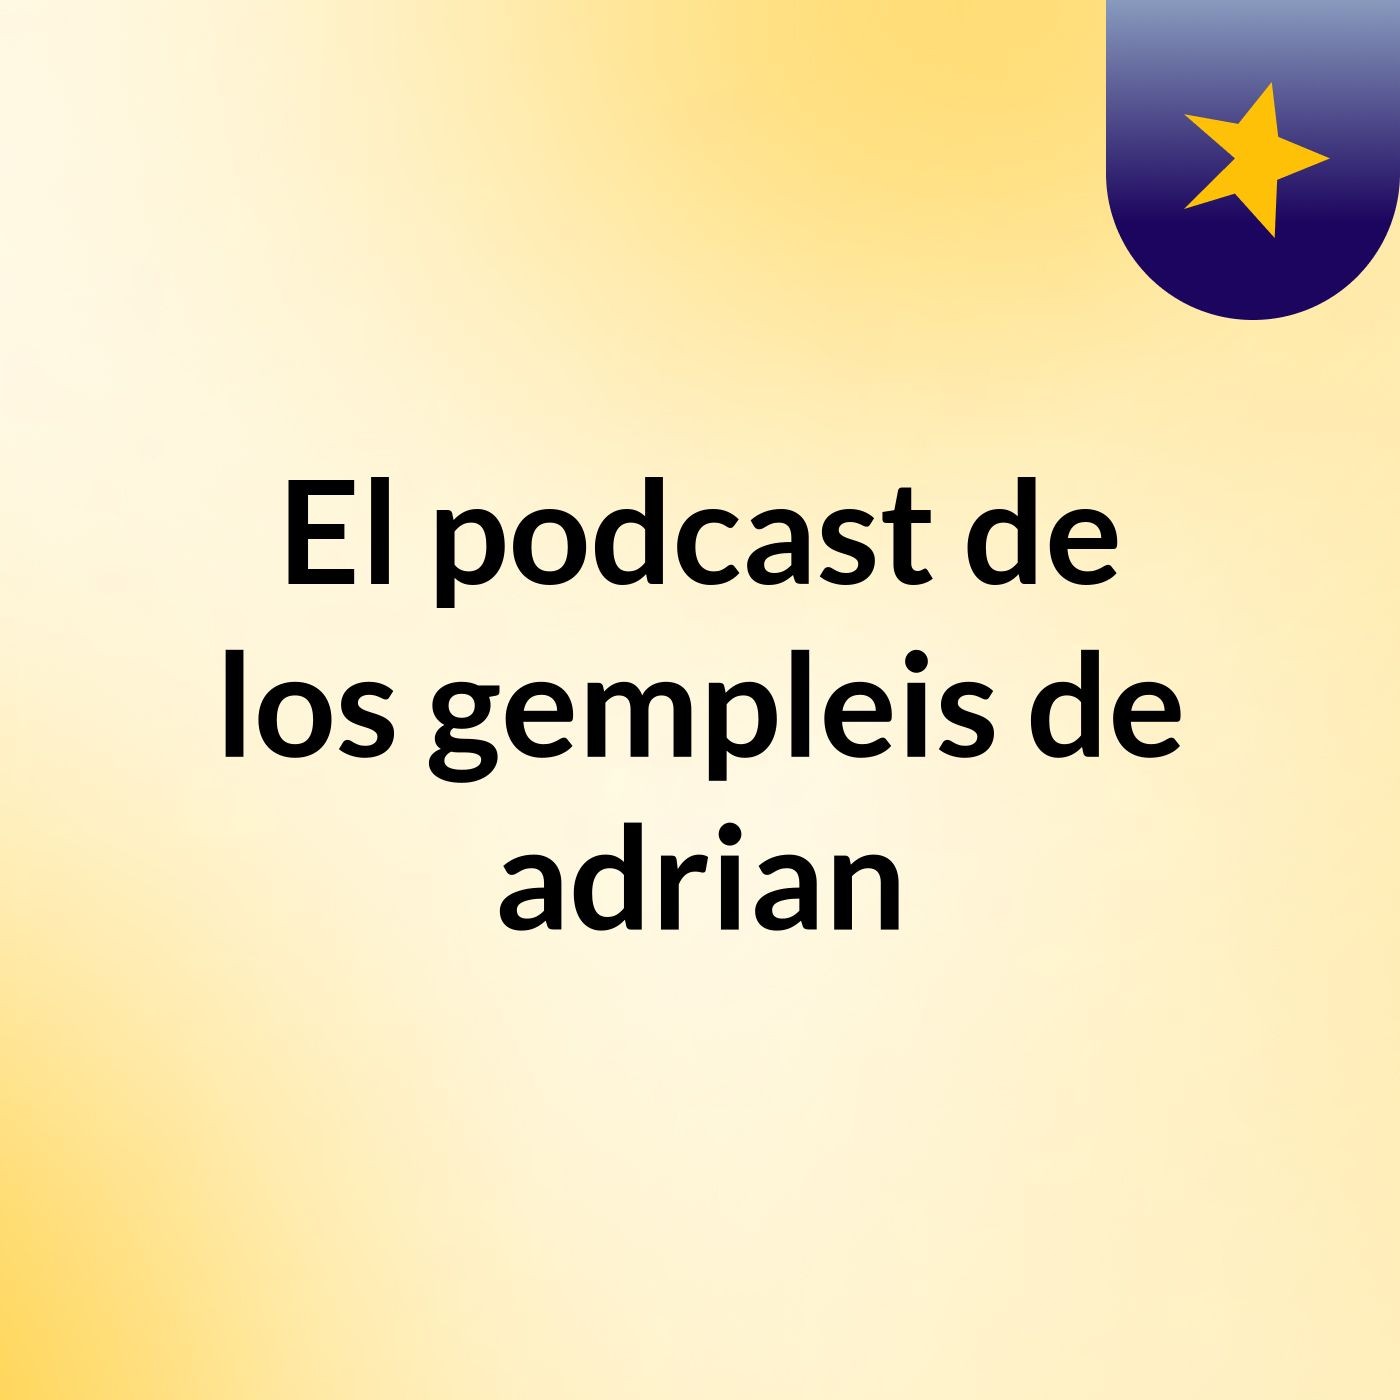 El podcast de los gempleis de adrian